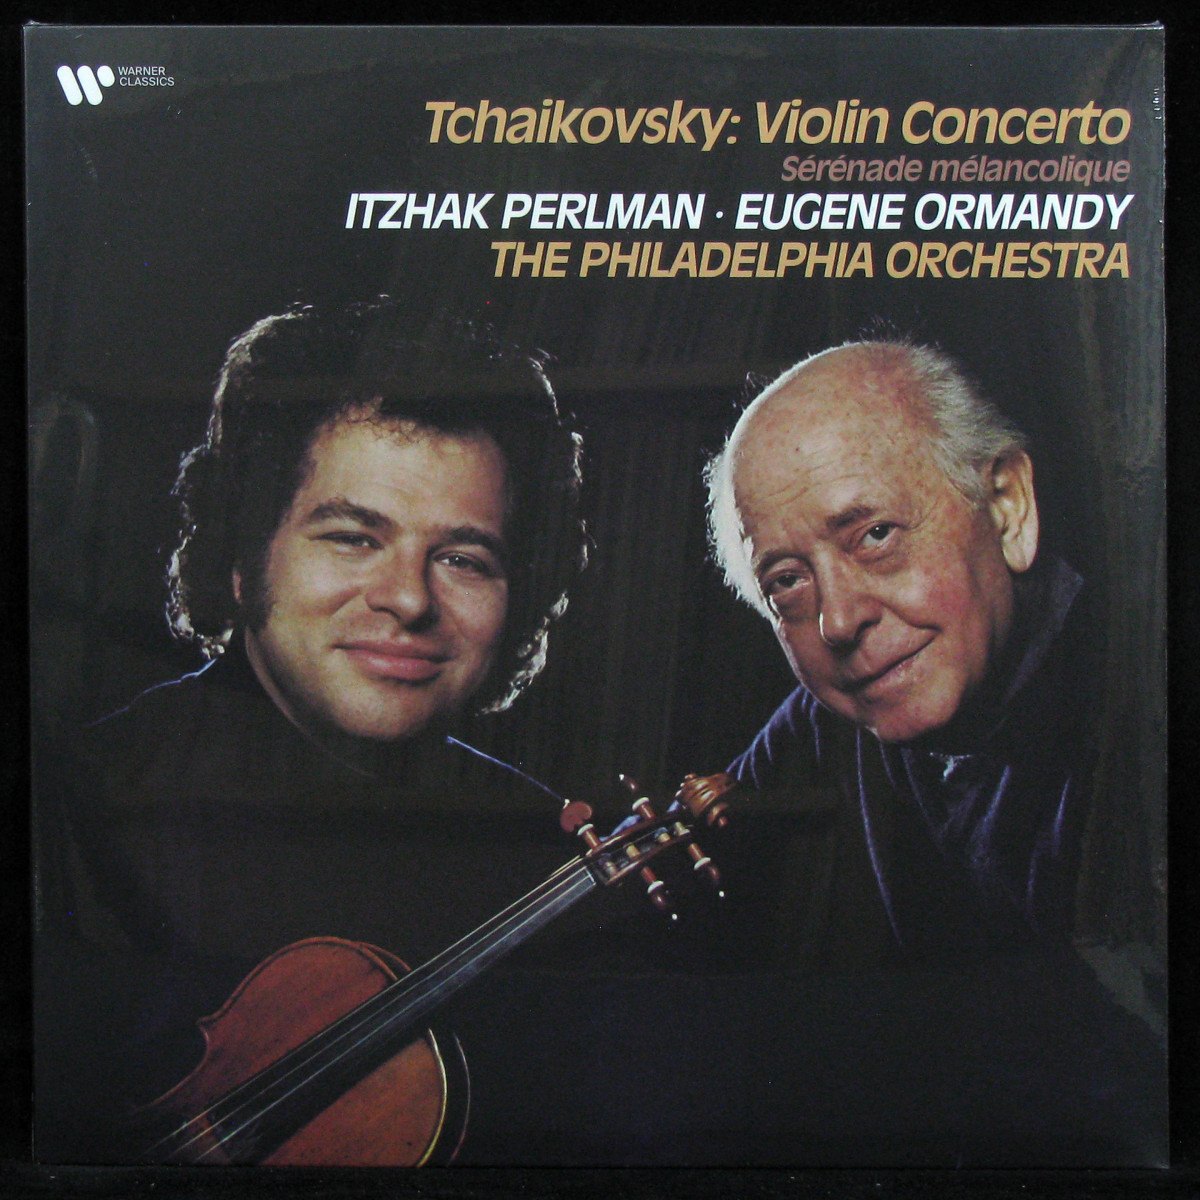 Tchaikovsky: Violin Concerto/Serenade Melancolique